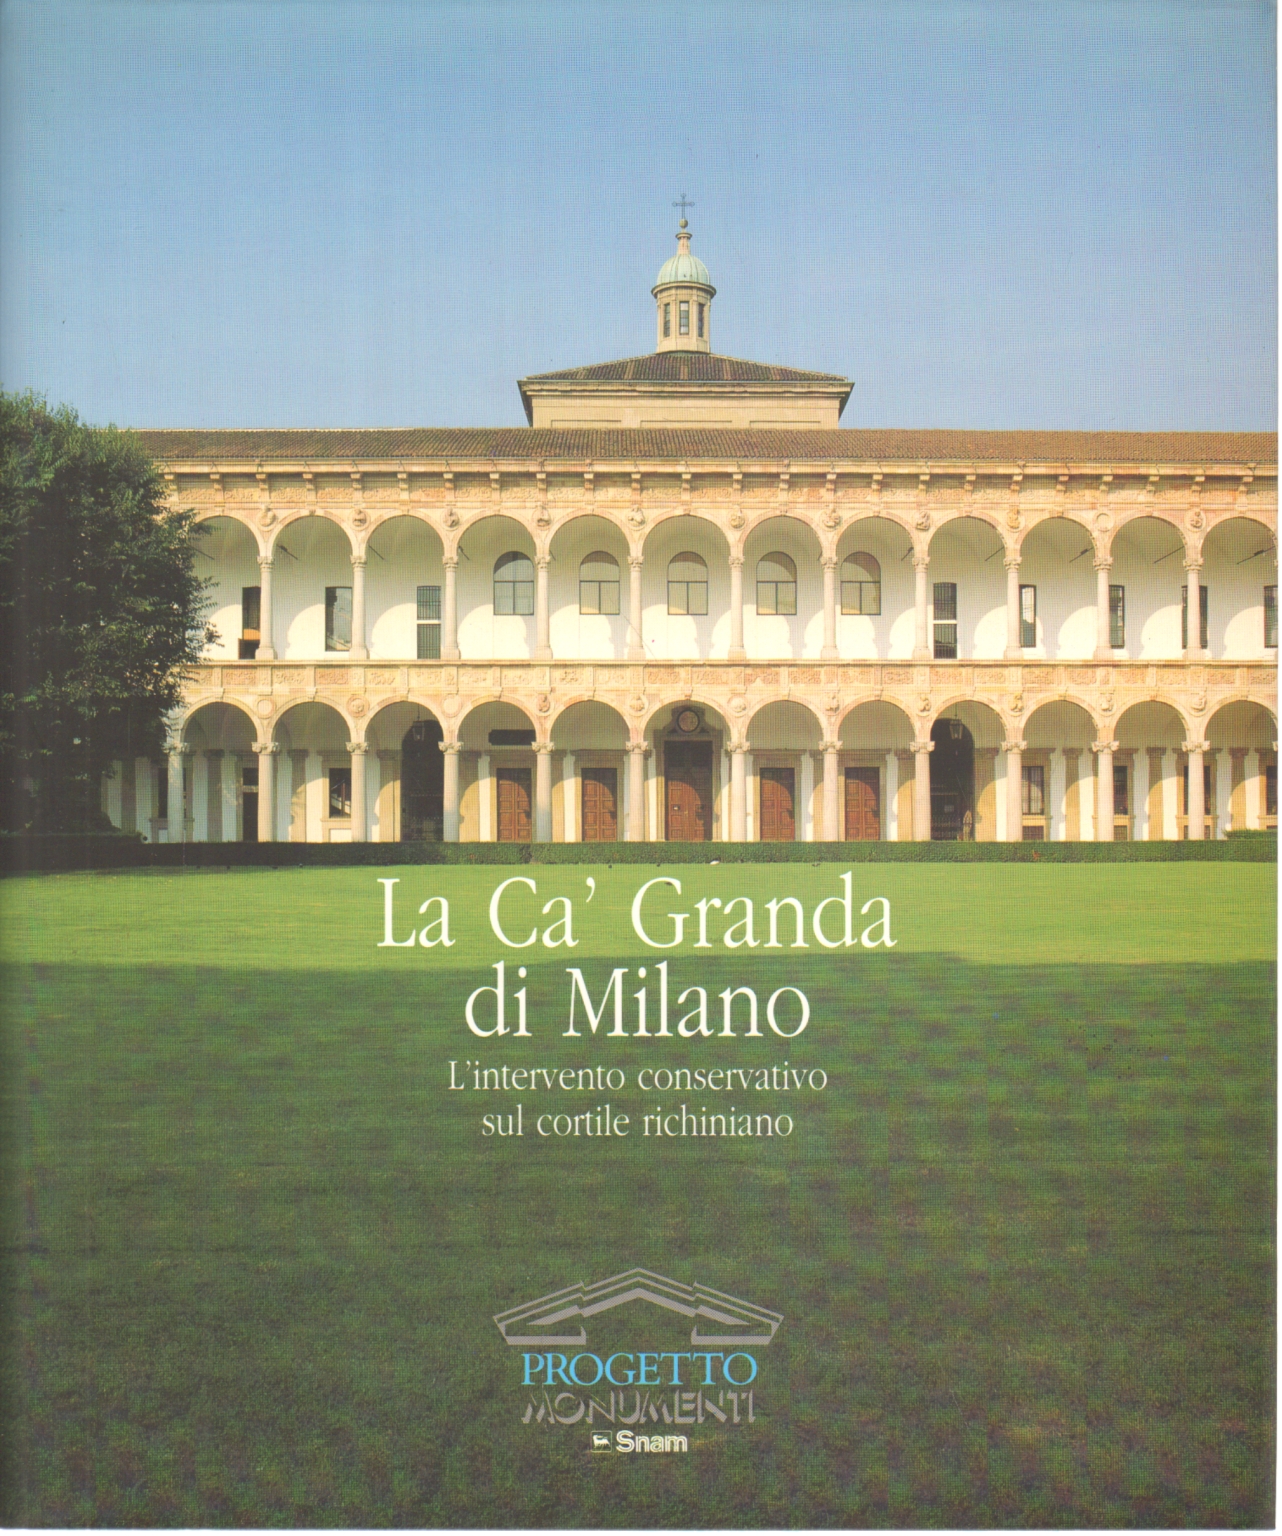 The Ca' Granda in Milan